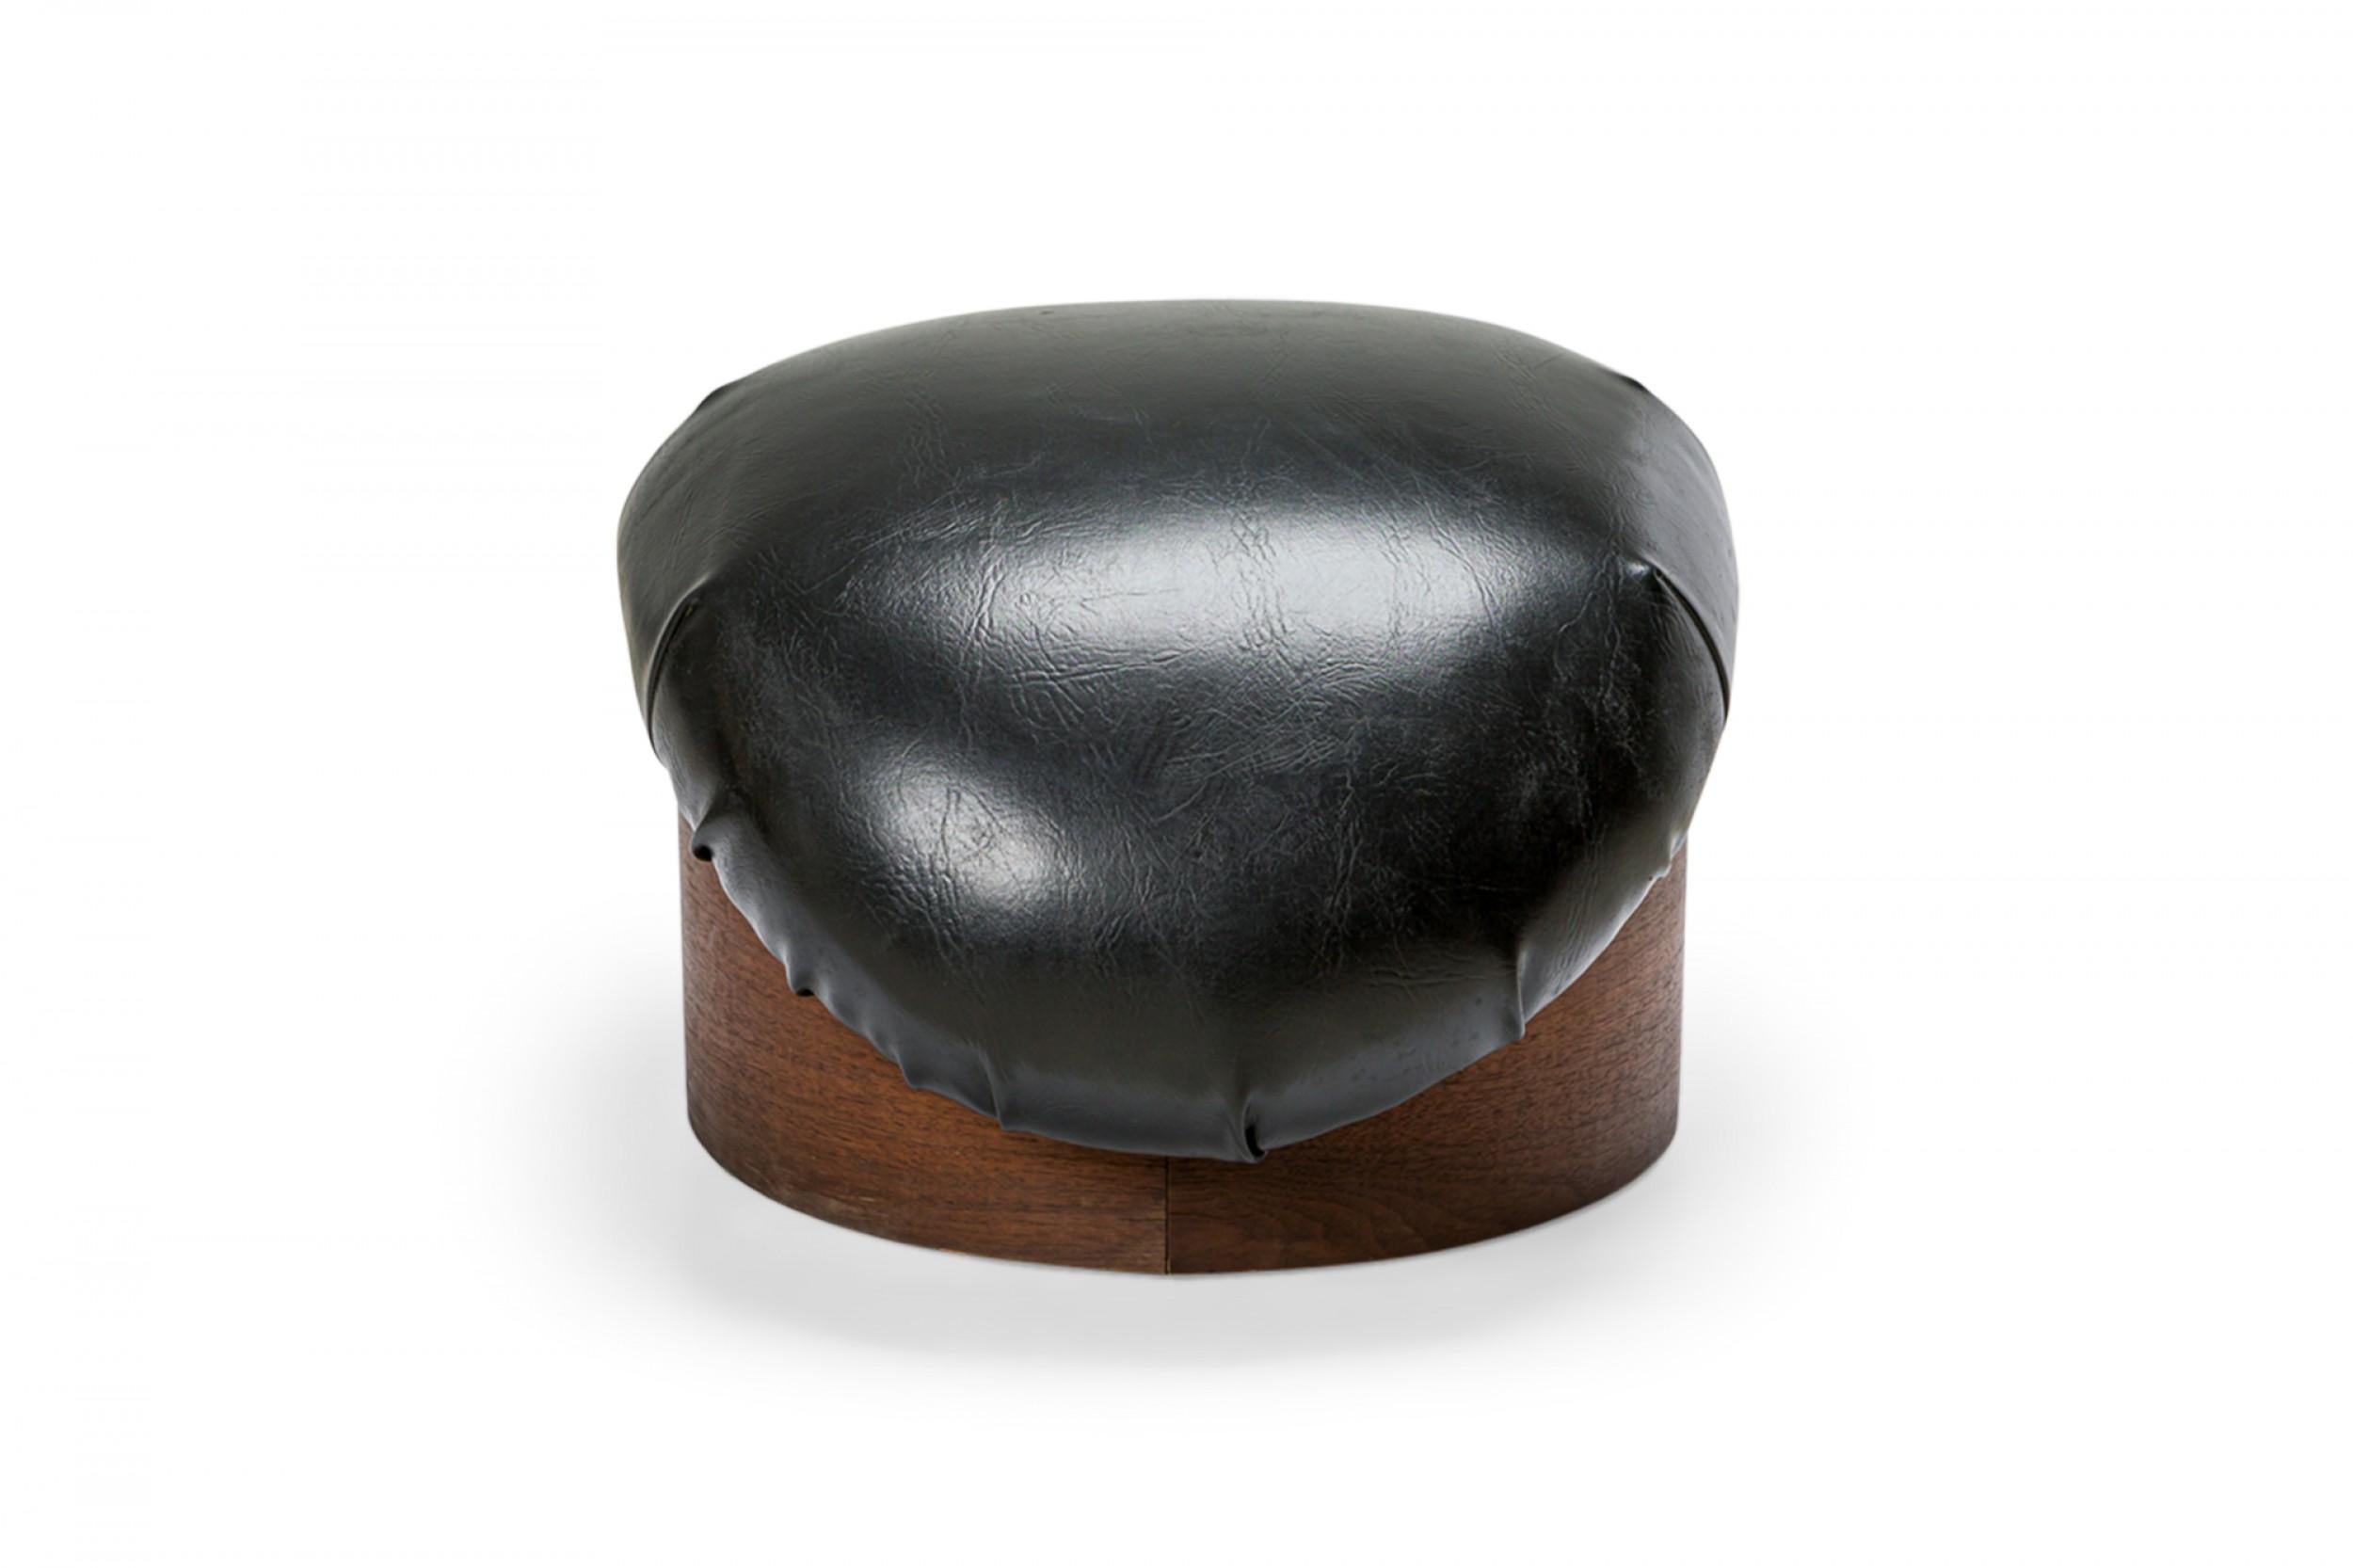 PAIRE de poufs américains du milieu du siècle avec des coussins en cuir noir incurvés soutenus par une base circulaire en bois. (MILO BAUGHMAN POUR THAYER COGGIN)(PRIX PAR PAIRE)